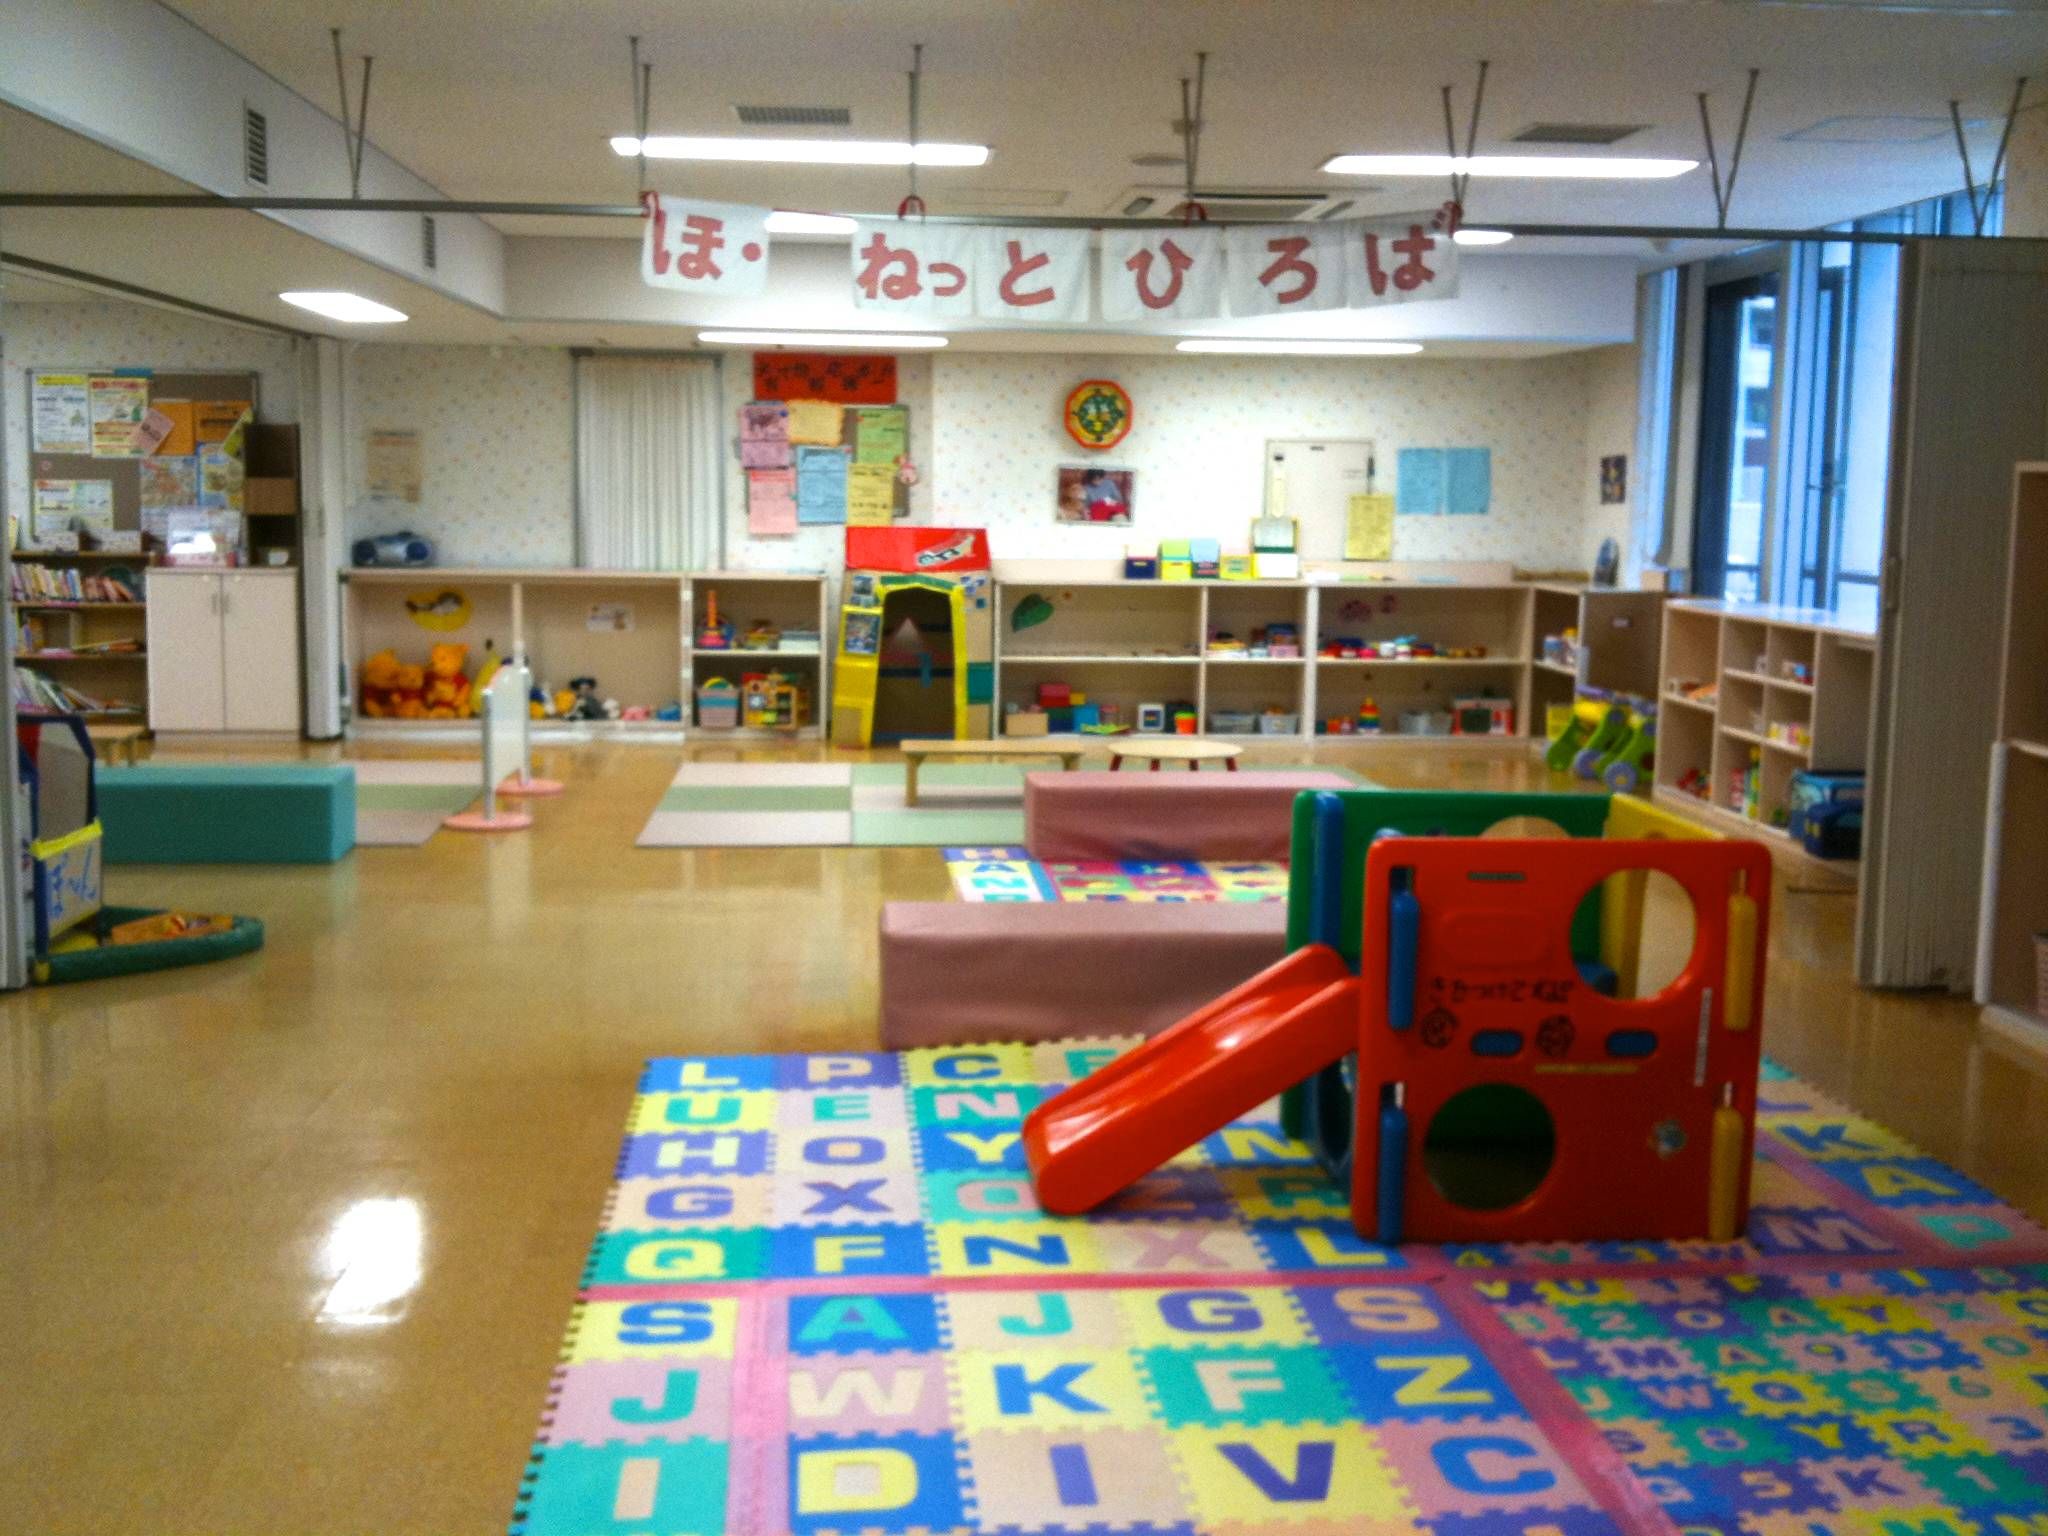 Japan Style Kids Playroom Designs